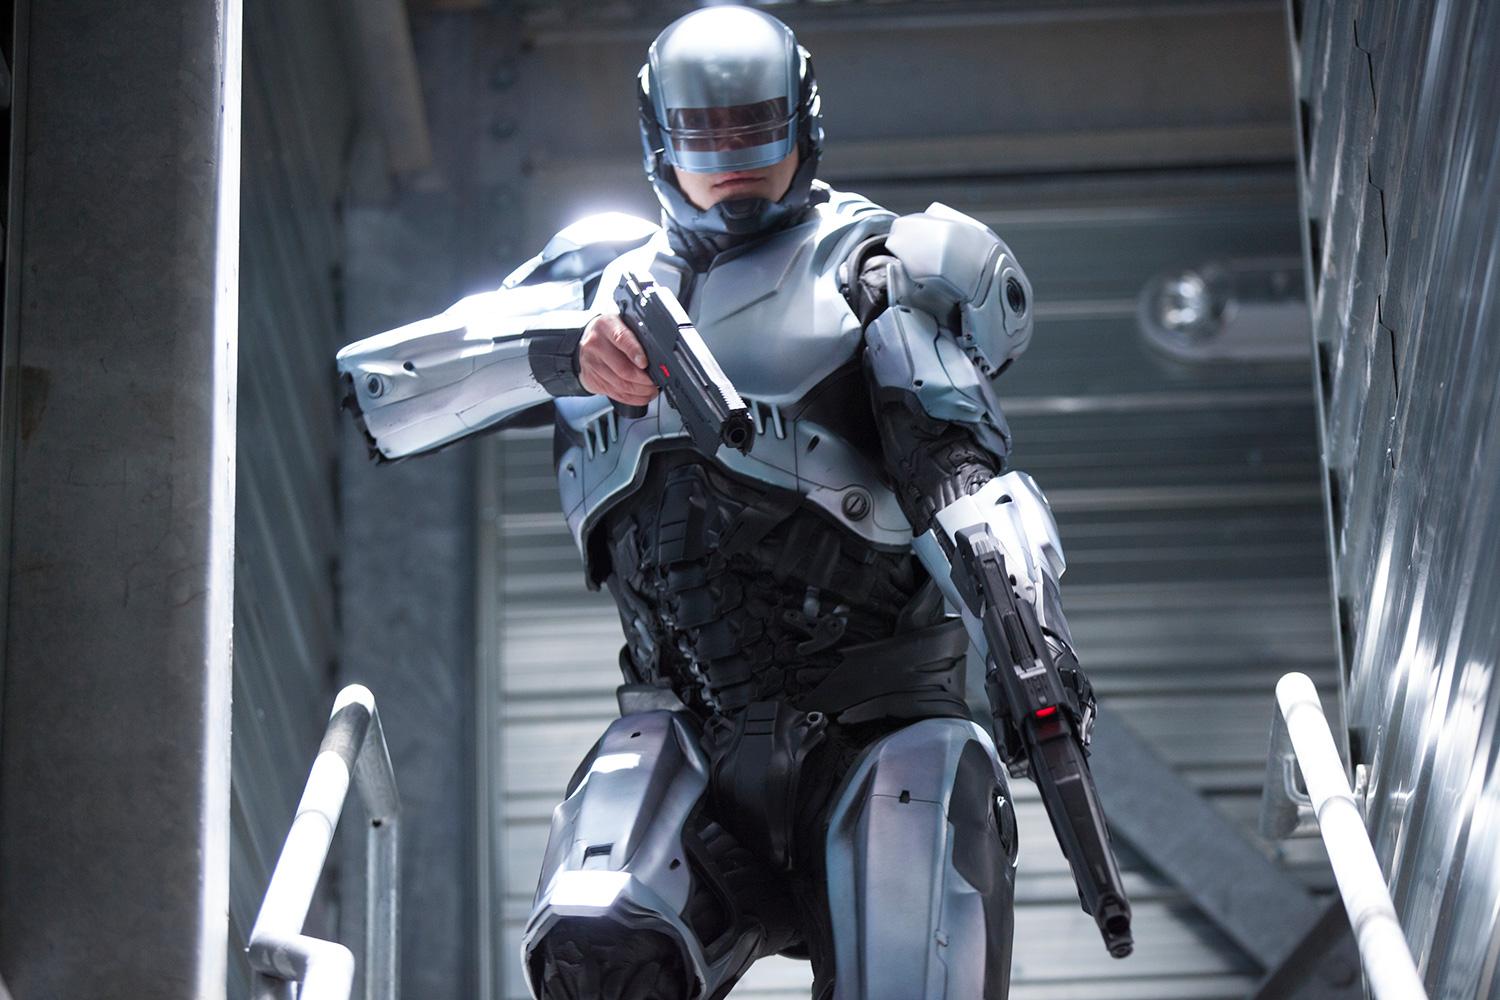 RoboCop e Terminator armi letali autonome in allestimento